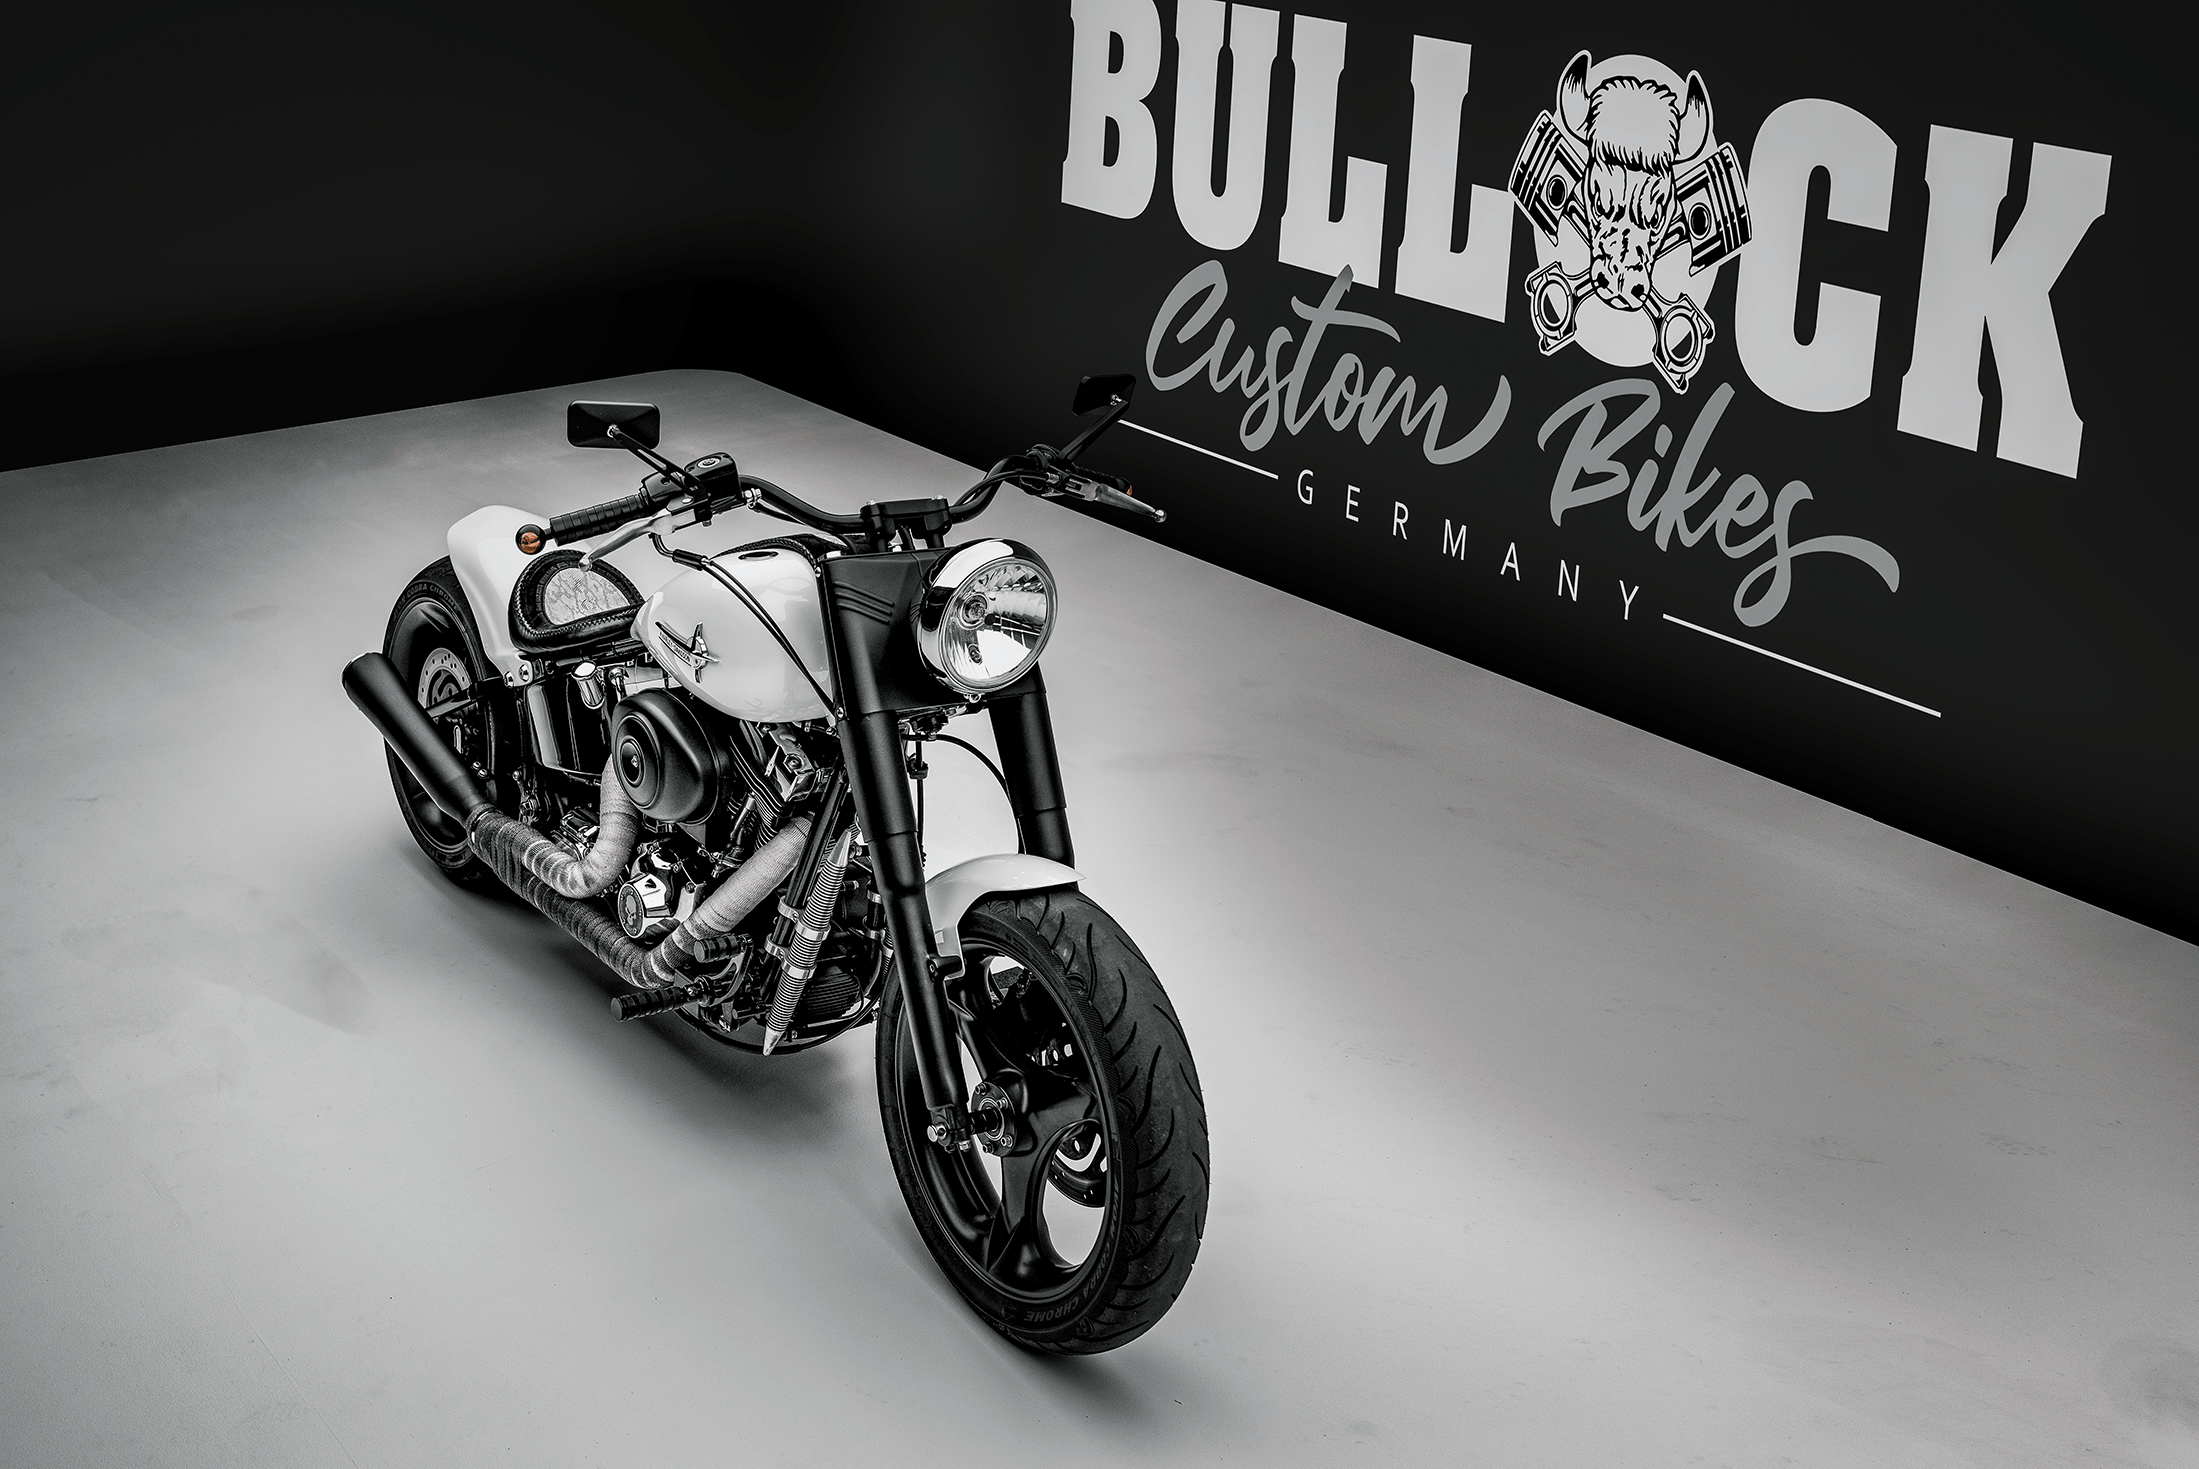 Bullock Custom Bikes Harley Davidson Slim